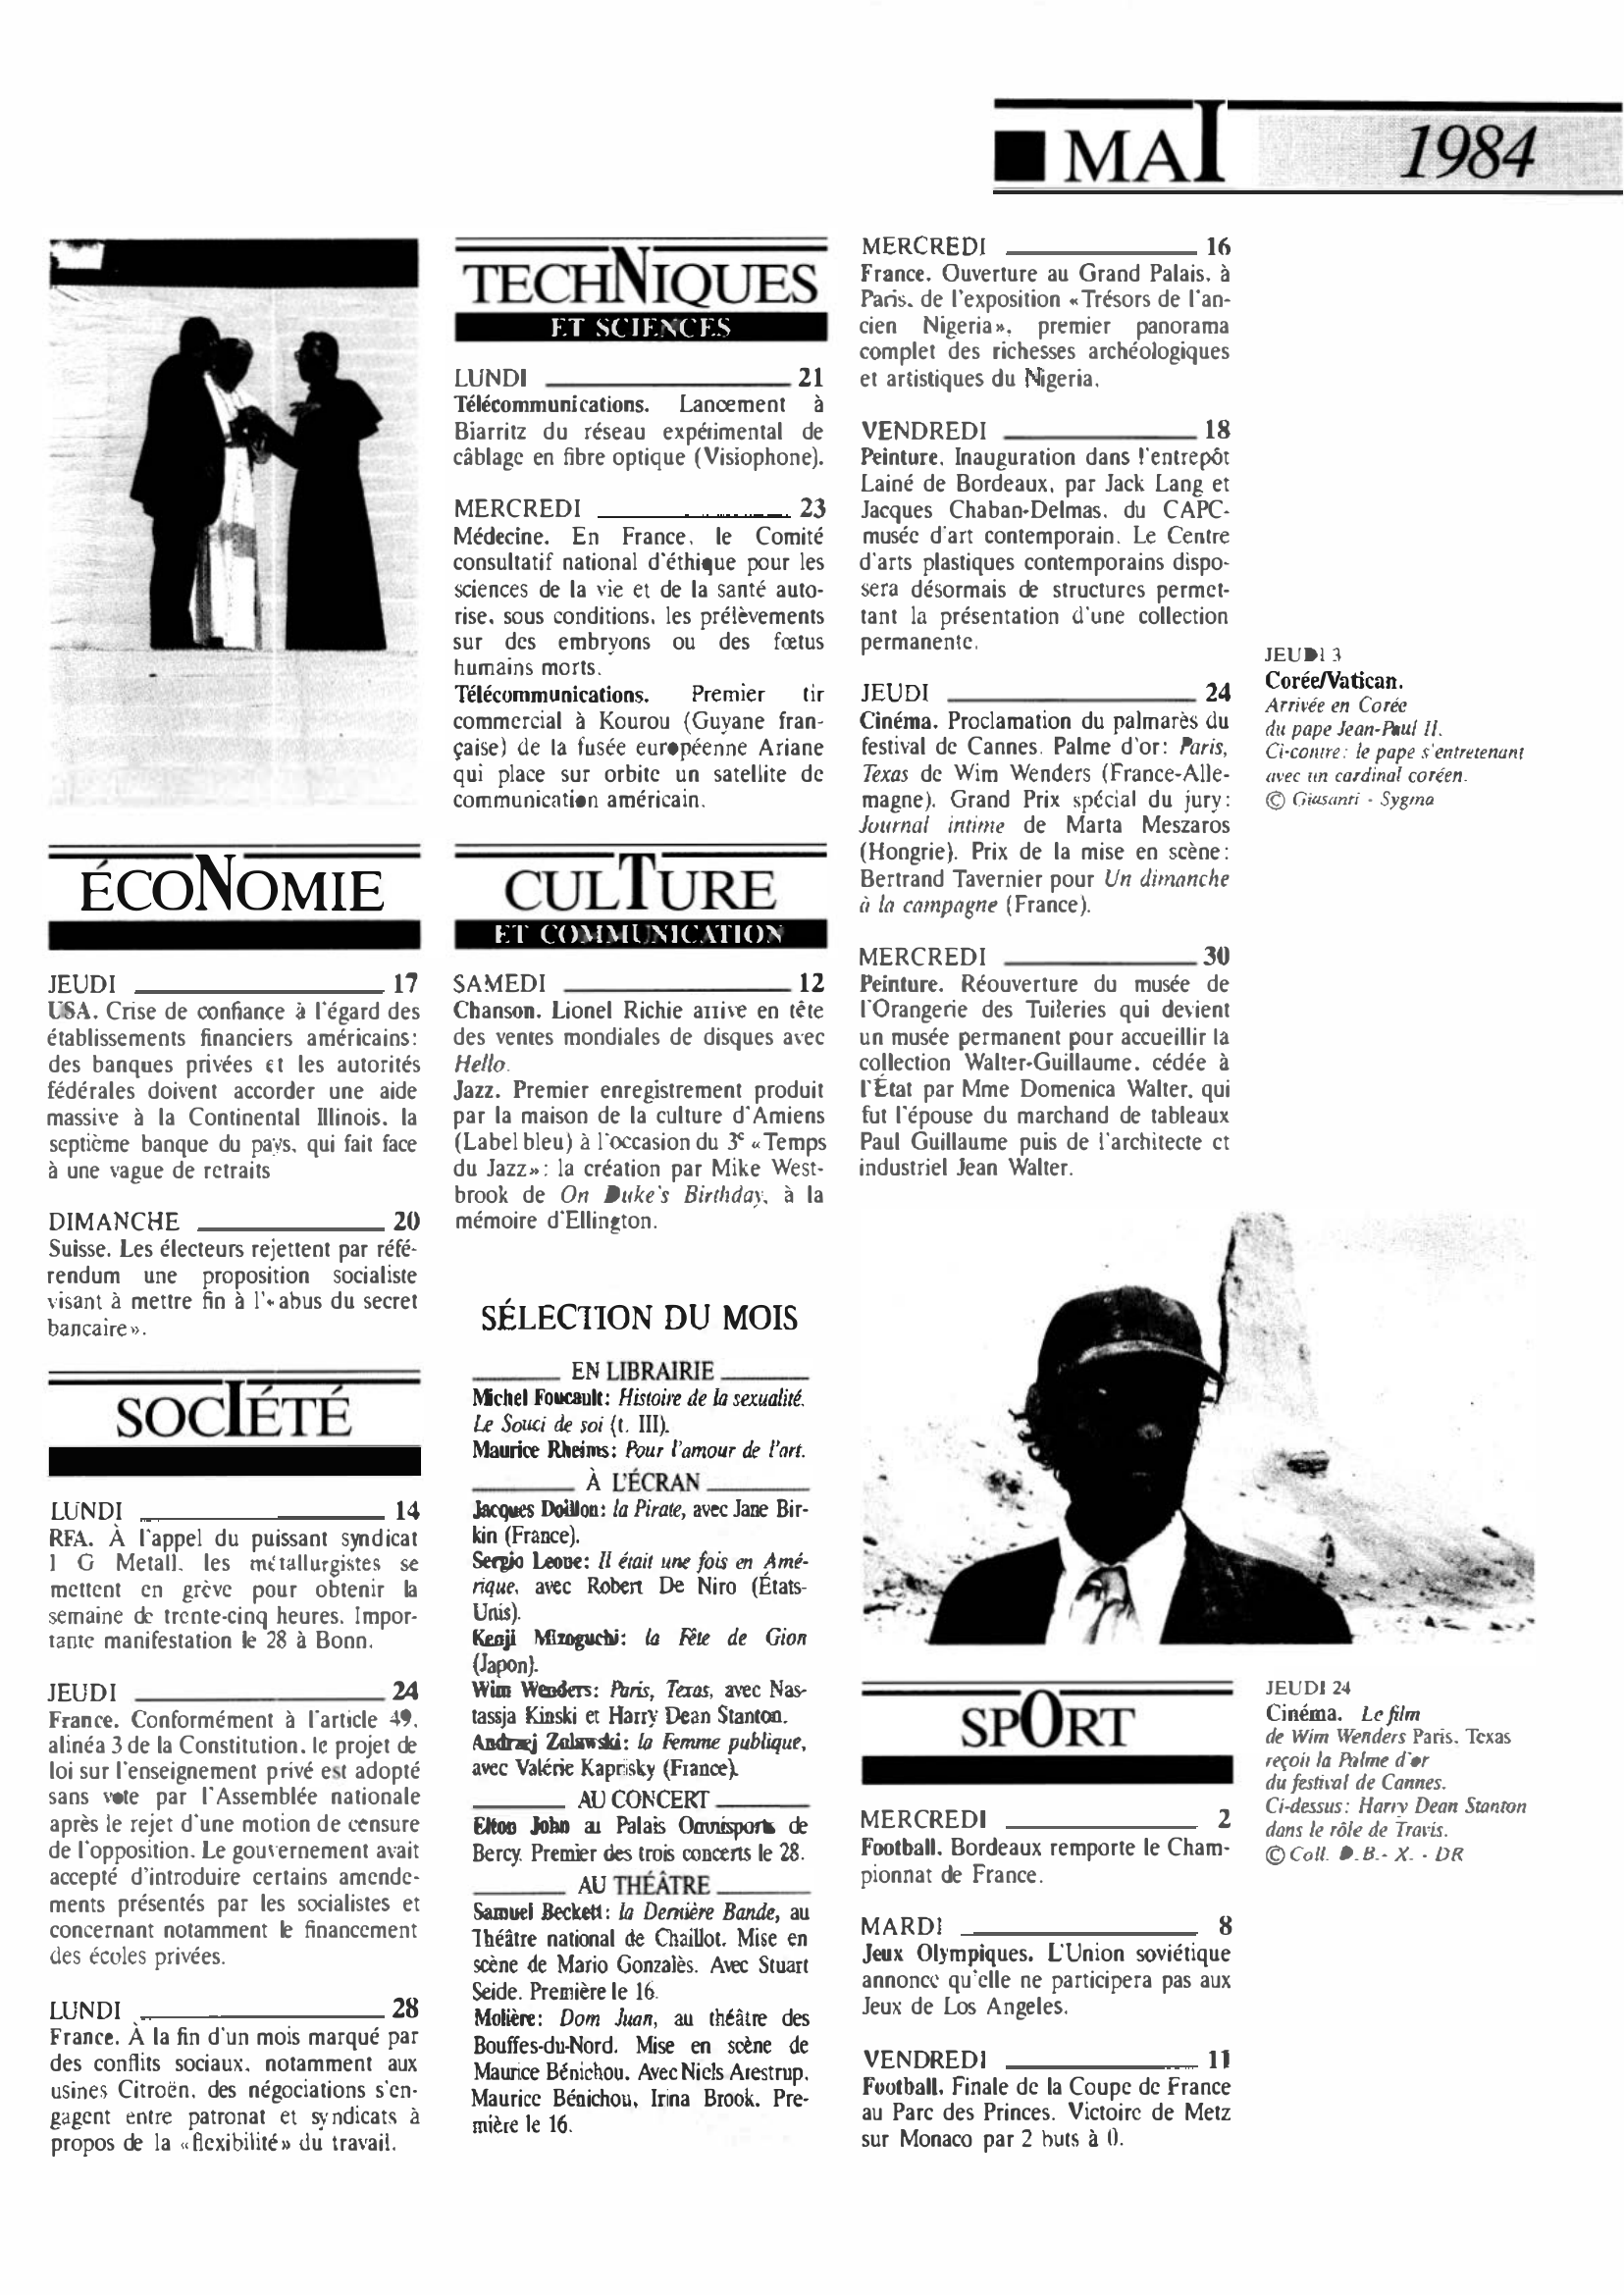 Prévisualisation du document Mai 1984 dans le monde (histoire chronologique)